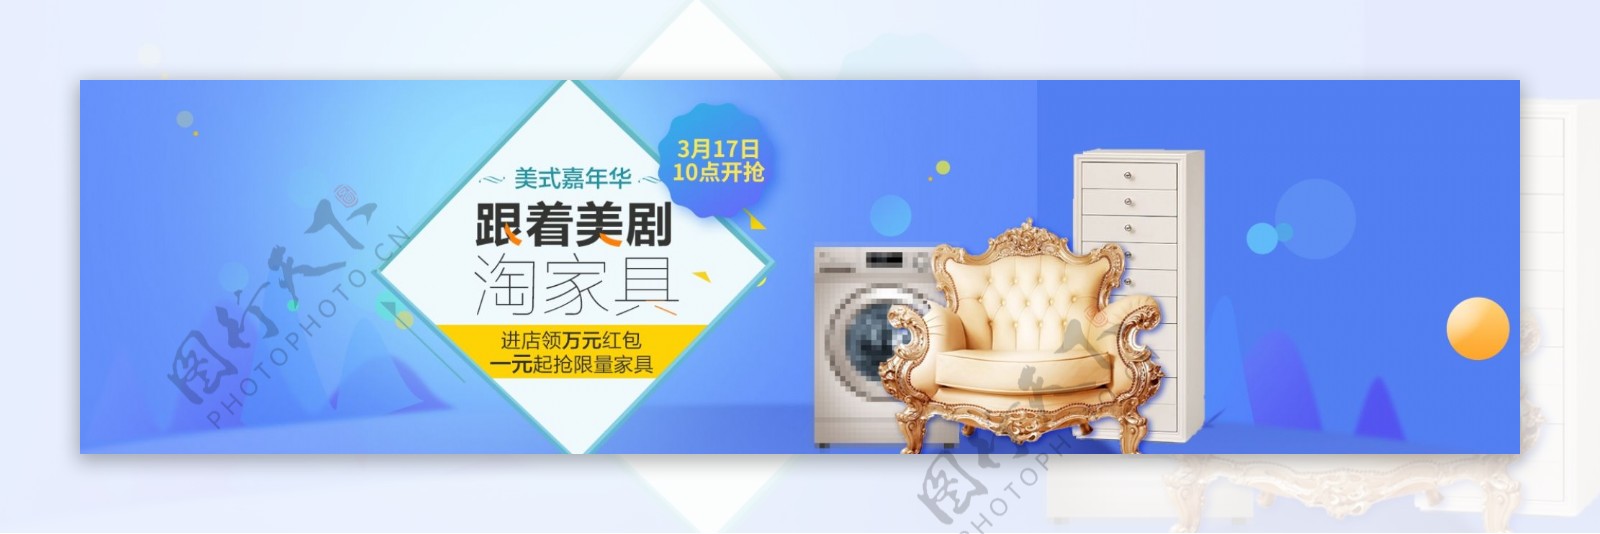 家装节沙发柜子洗衣机促销活动banner